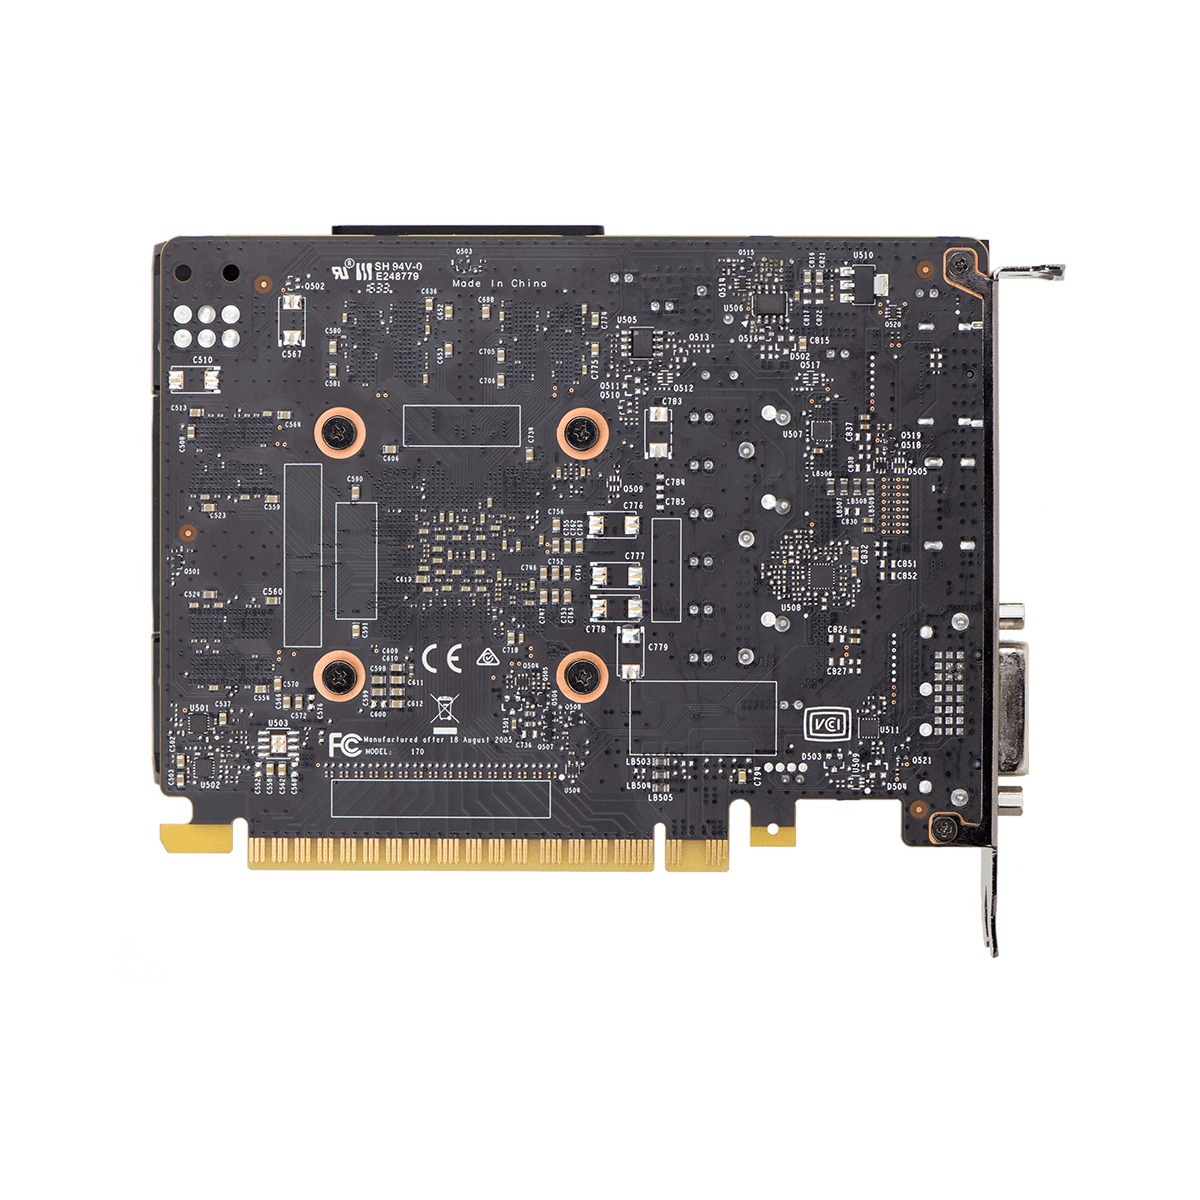 EVGA GeForce GTX 1050 Ti SC GAMING, 04G 